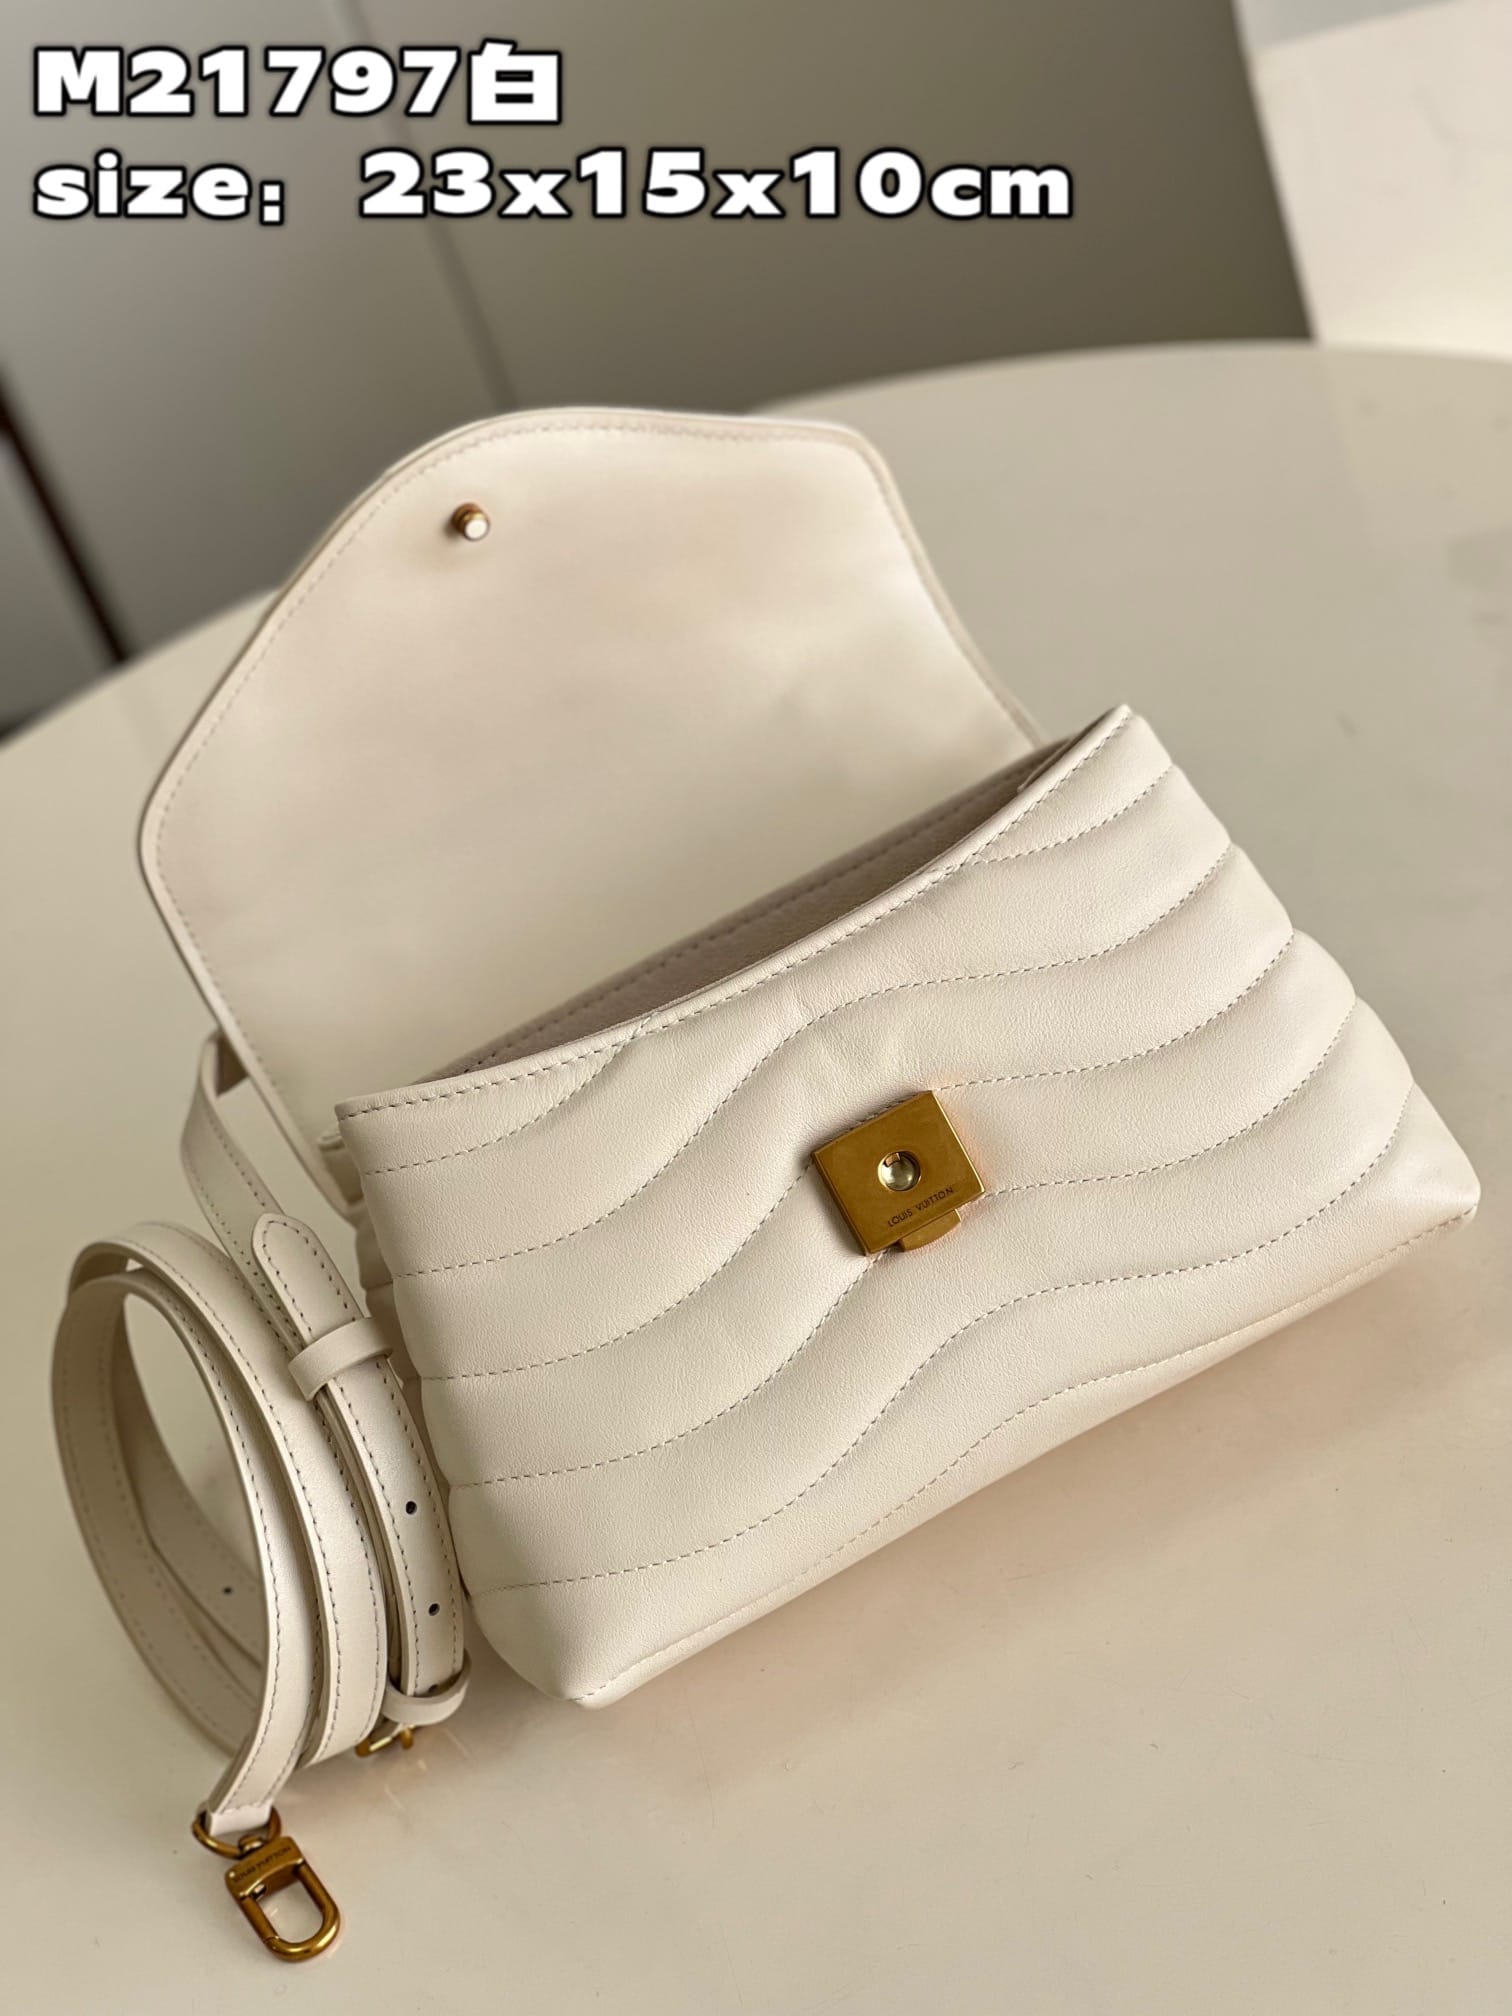 Louis Vuitton Hold Me Bag #lvholdme #lvholdmebag #m21720 #m21797